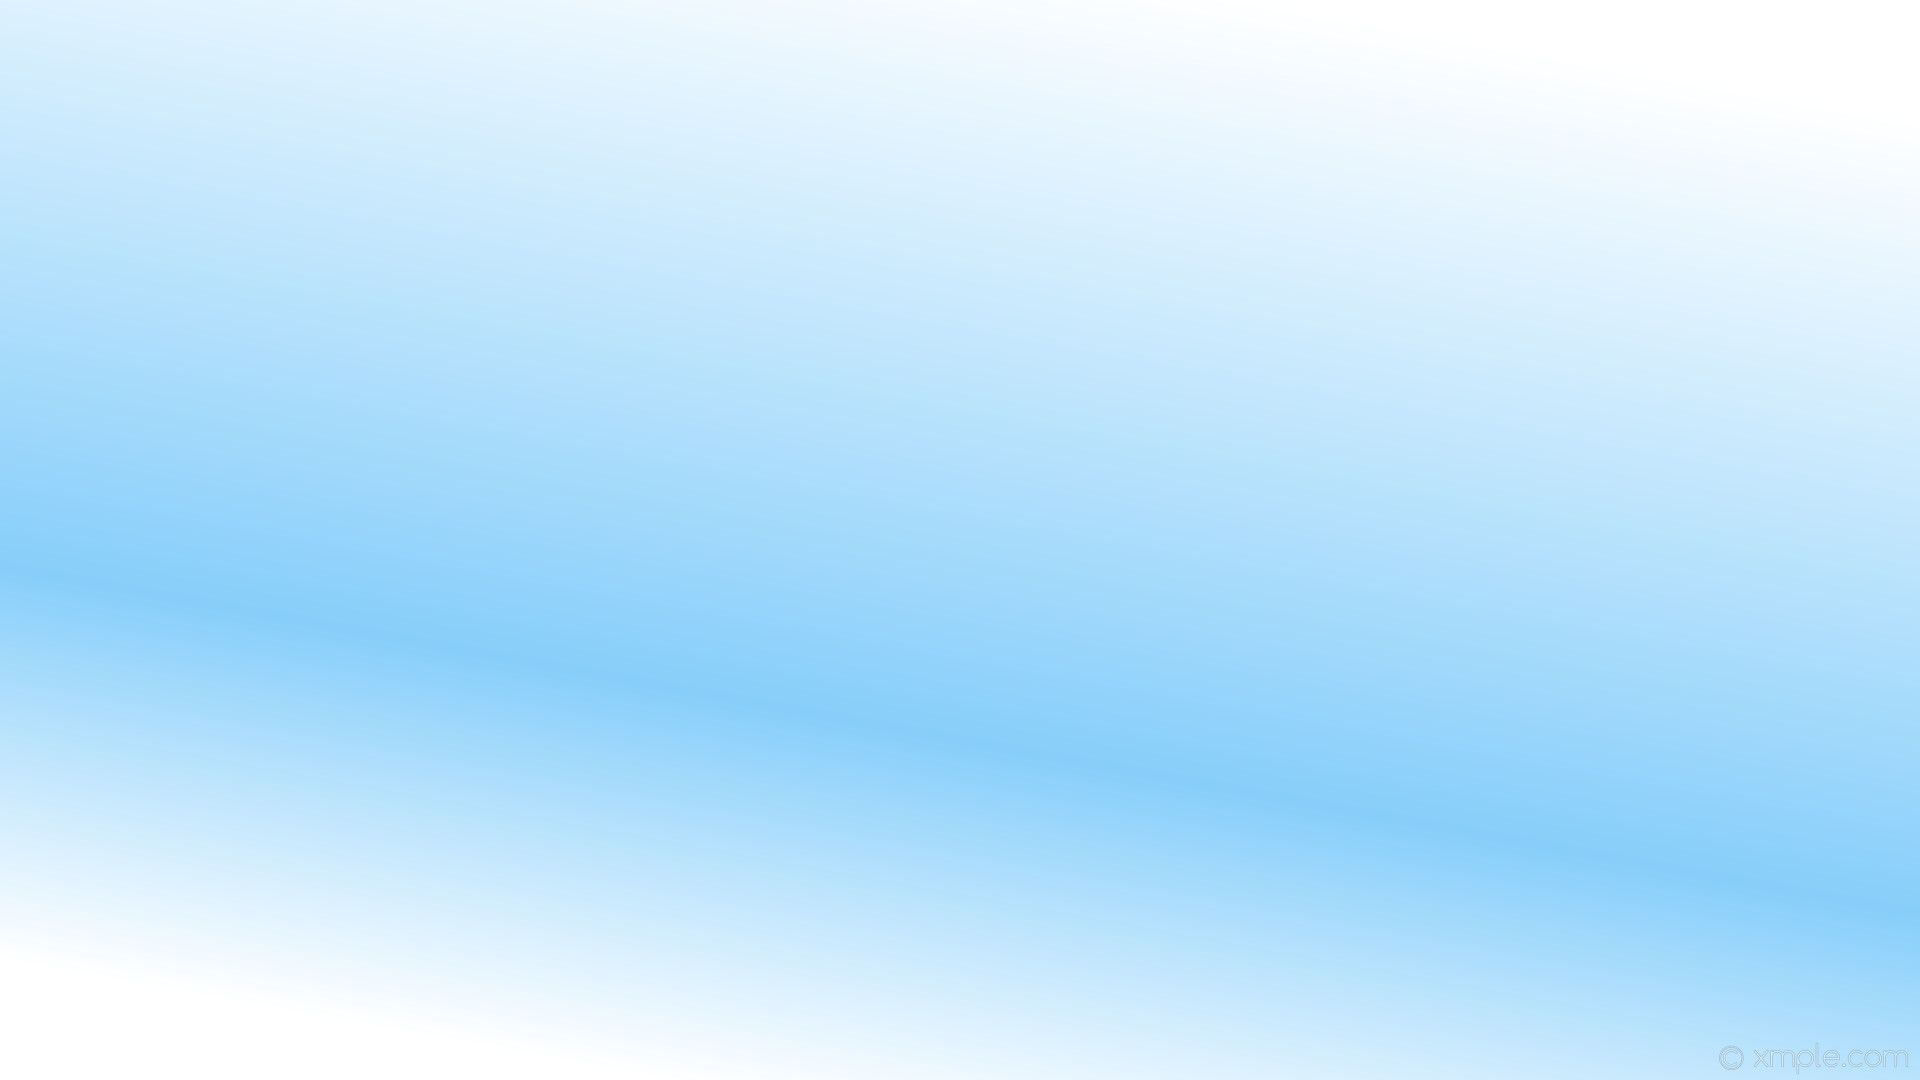 Light Blue And White Wallpaper 
 Data-src /img/424604 - Blue And White Gradient Background - HD Wallpaper 